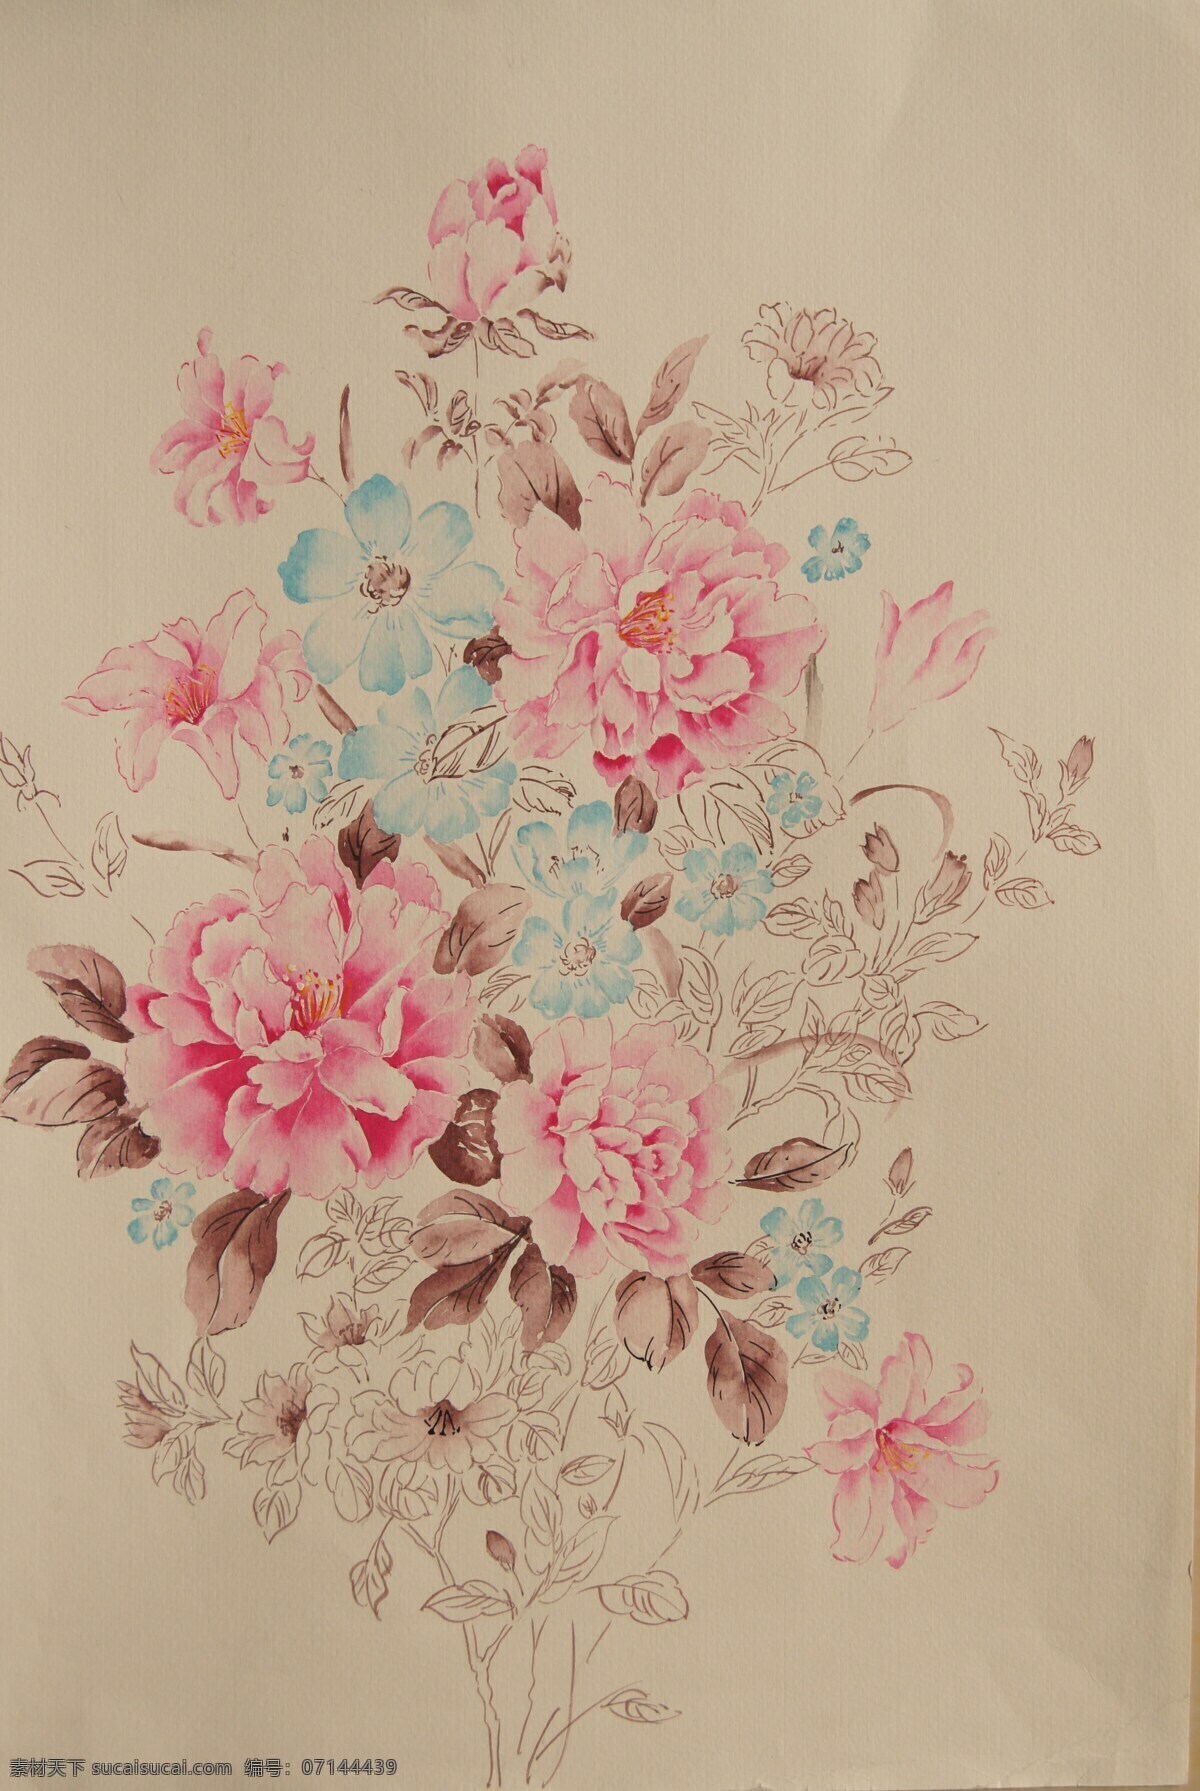 抽象花卉 绘画书法 手绘花卉 水彩花卉 文化艺术 植物 水彩 花卉 设计素材 模板下载 花卉植物组合